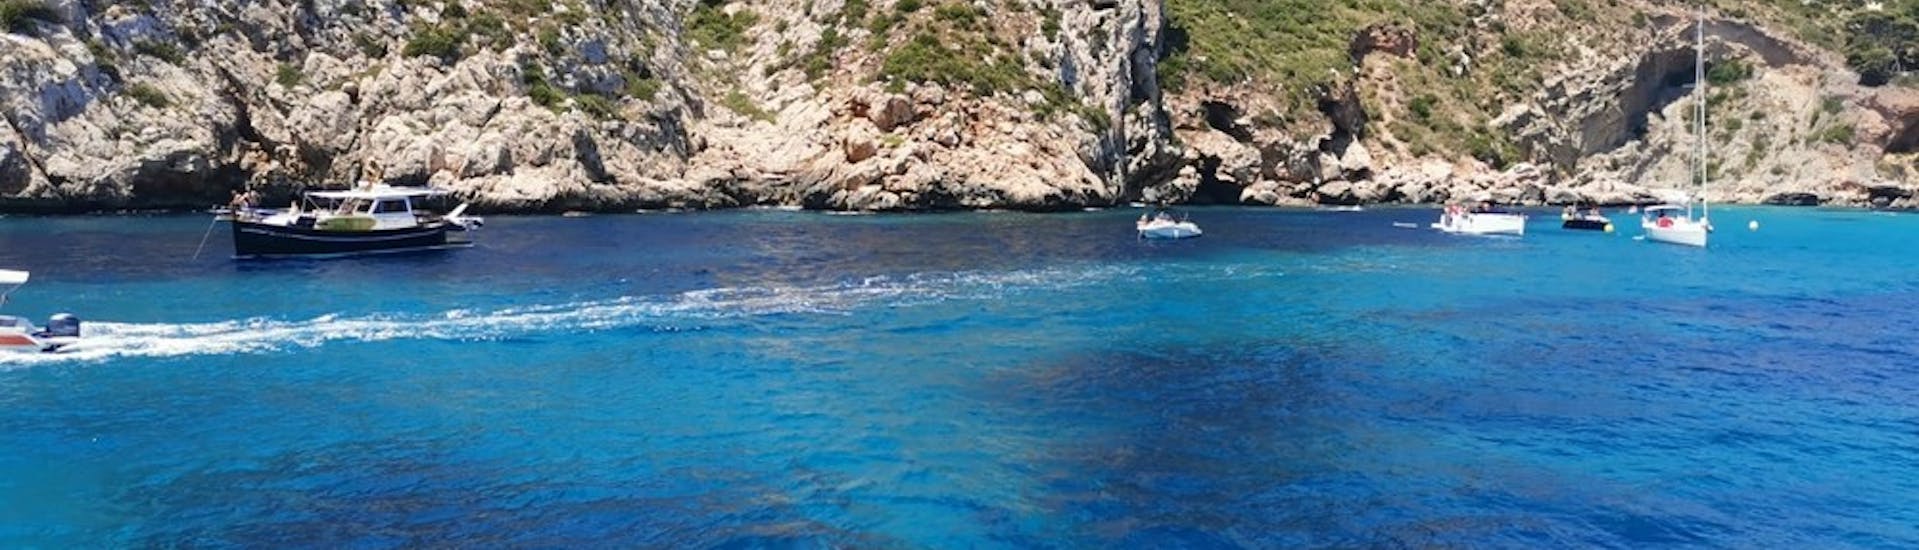 Gita in catamarano da Denia a Cova Tallada con bagno in mare e visita turistica.